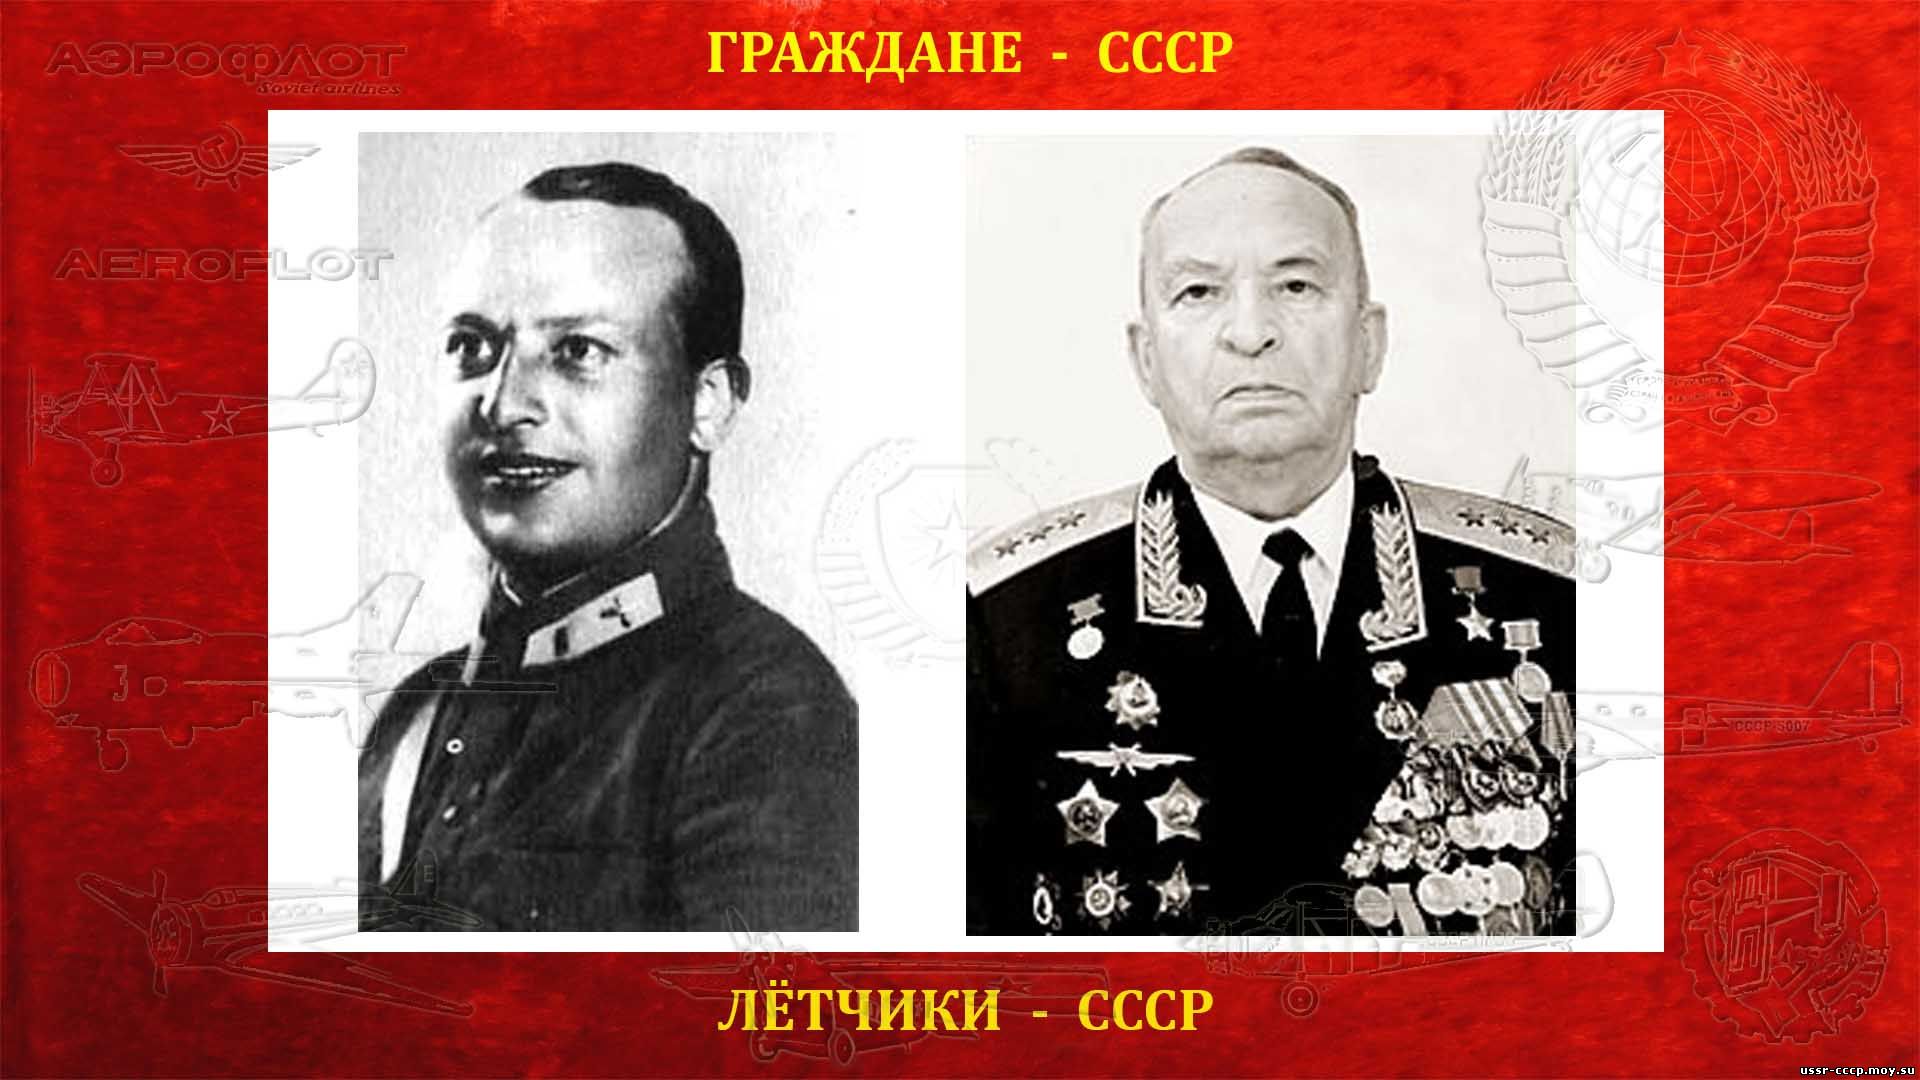 Байдуков Г.Ф. (биография)